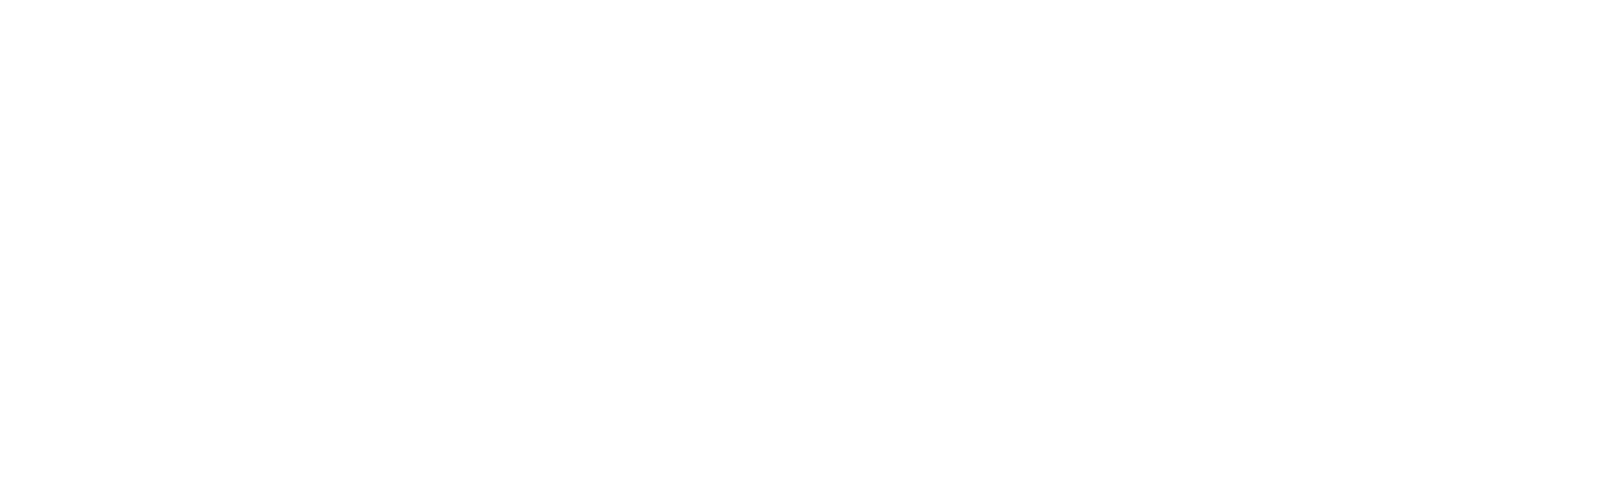 HOTBOXXX GmbH